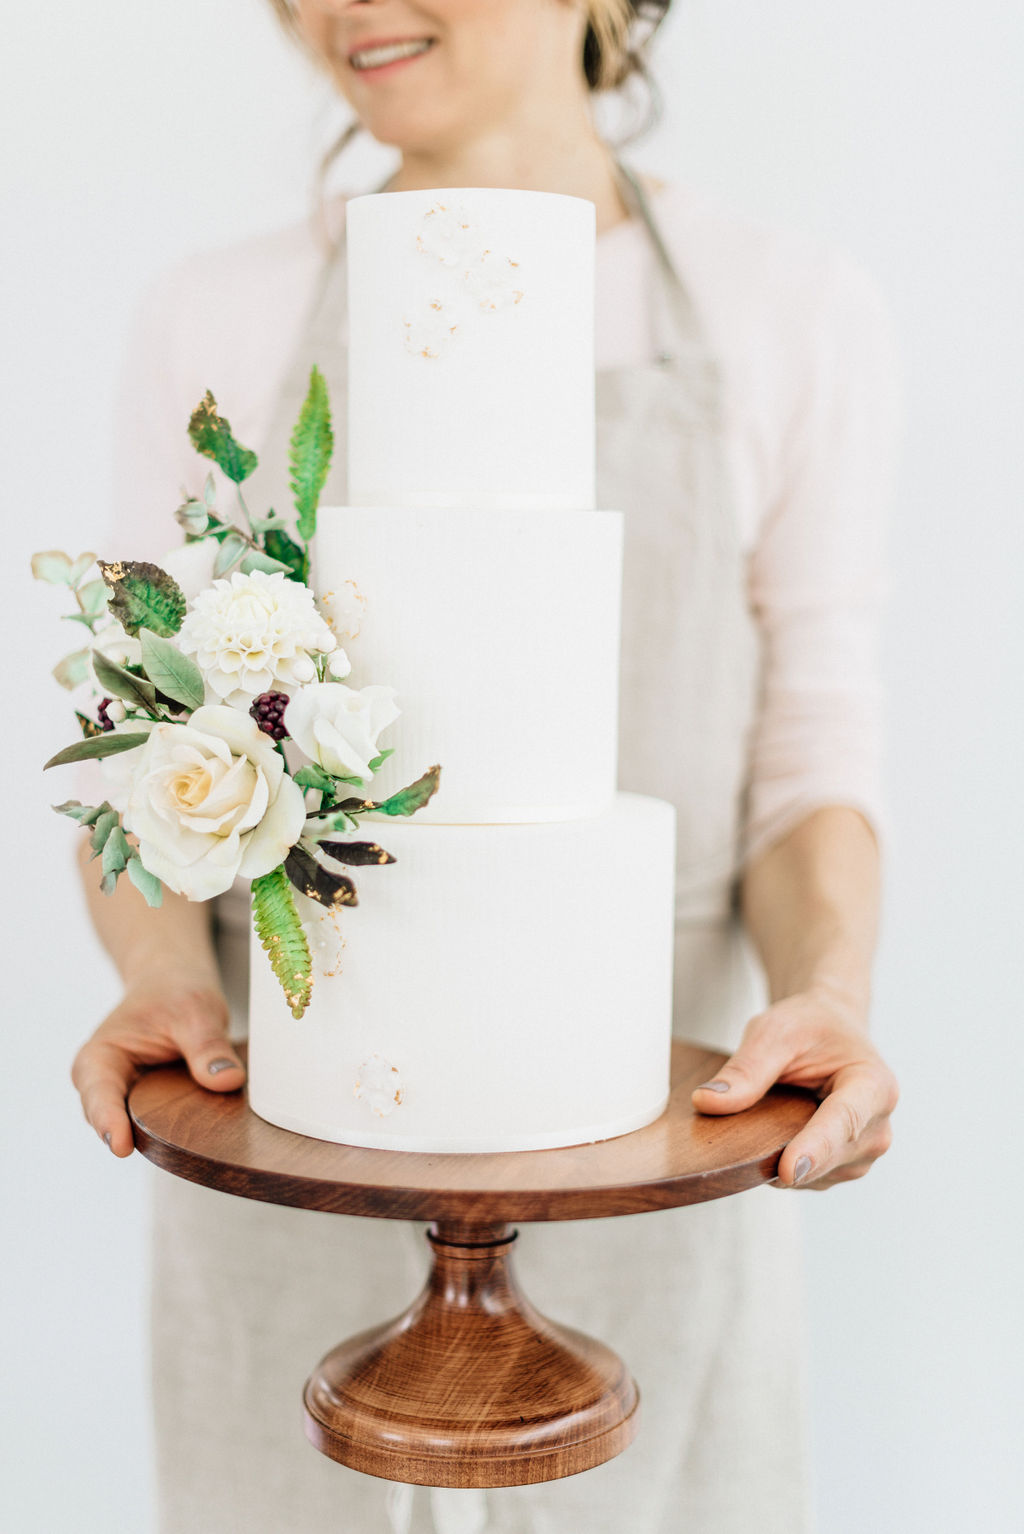 Baker holding decorated white wedding cake